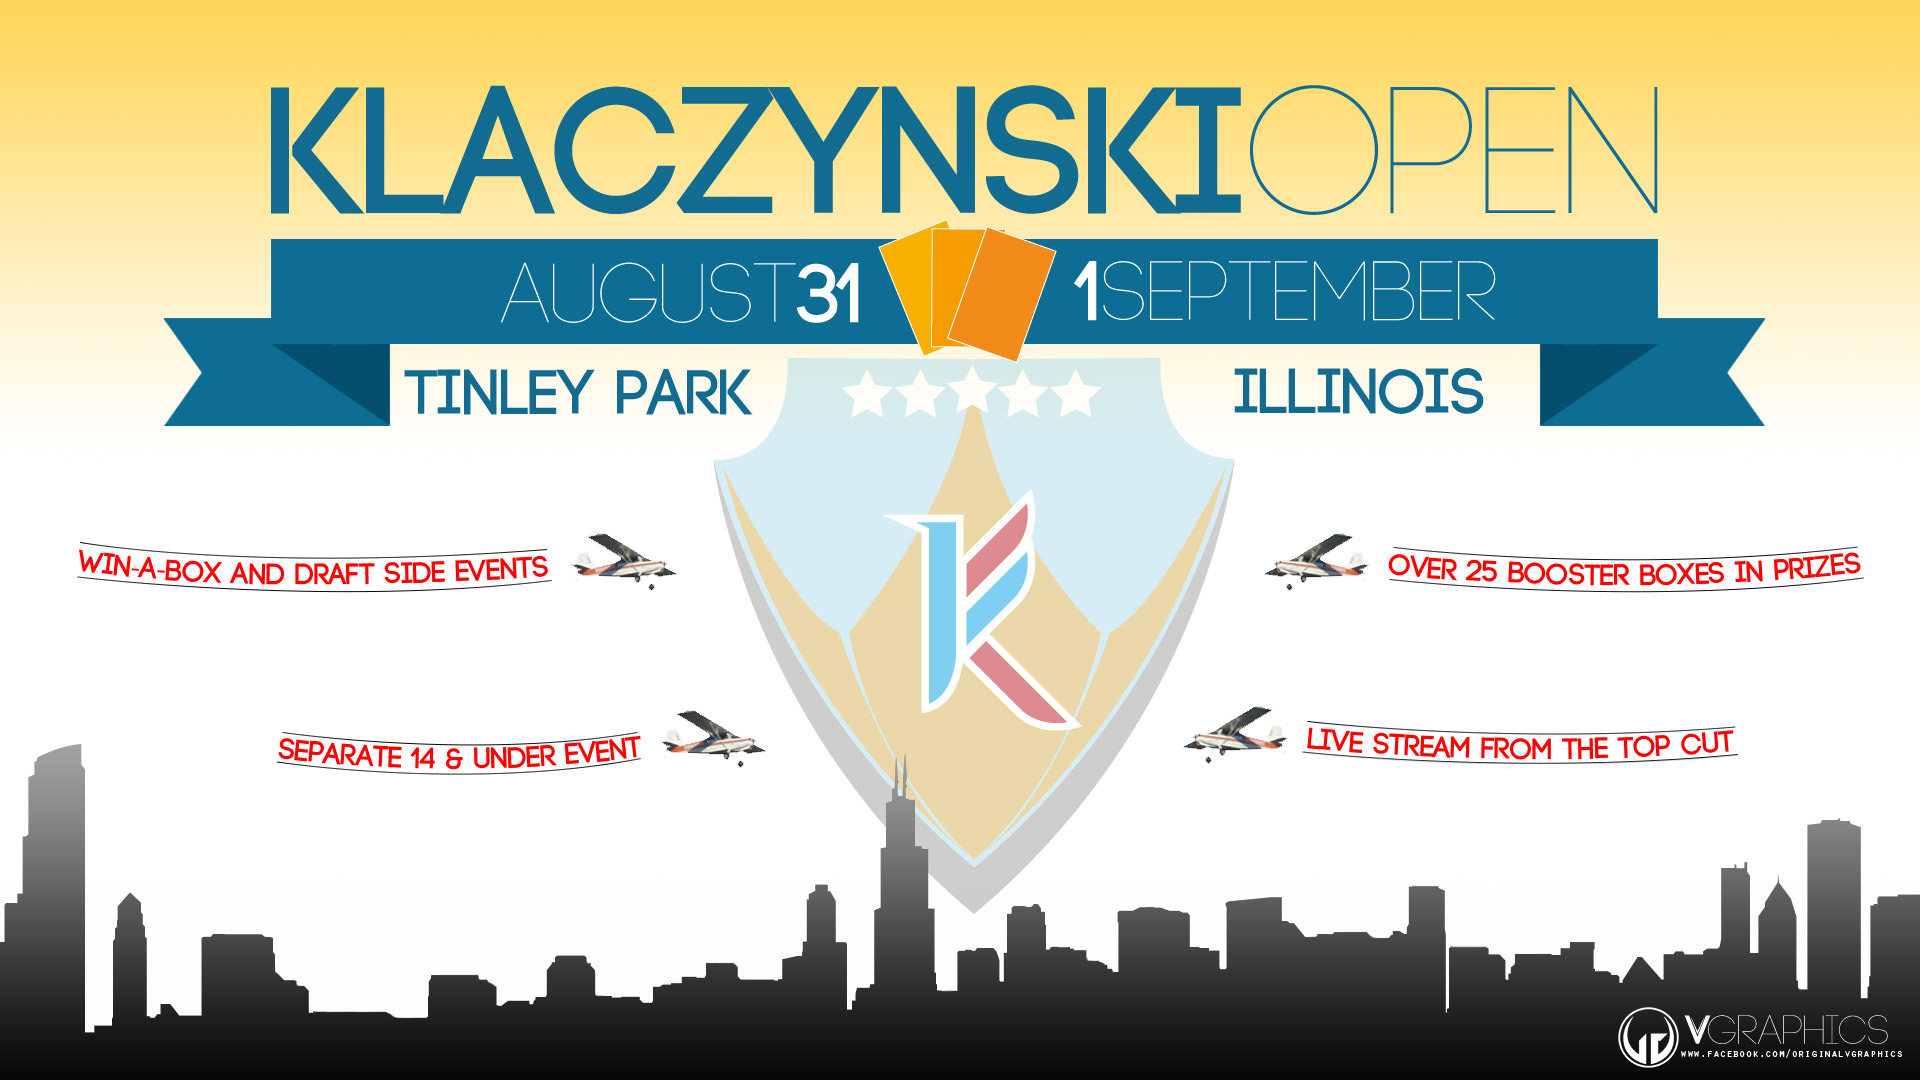 Klaczynski Open